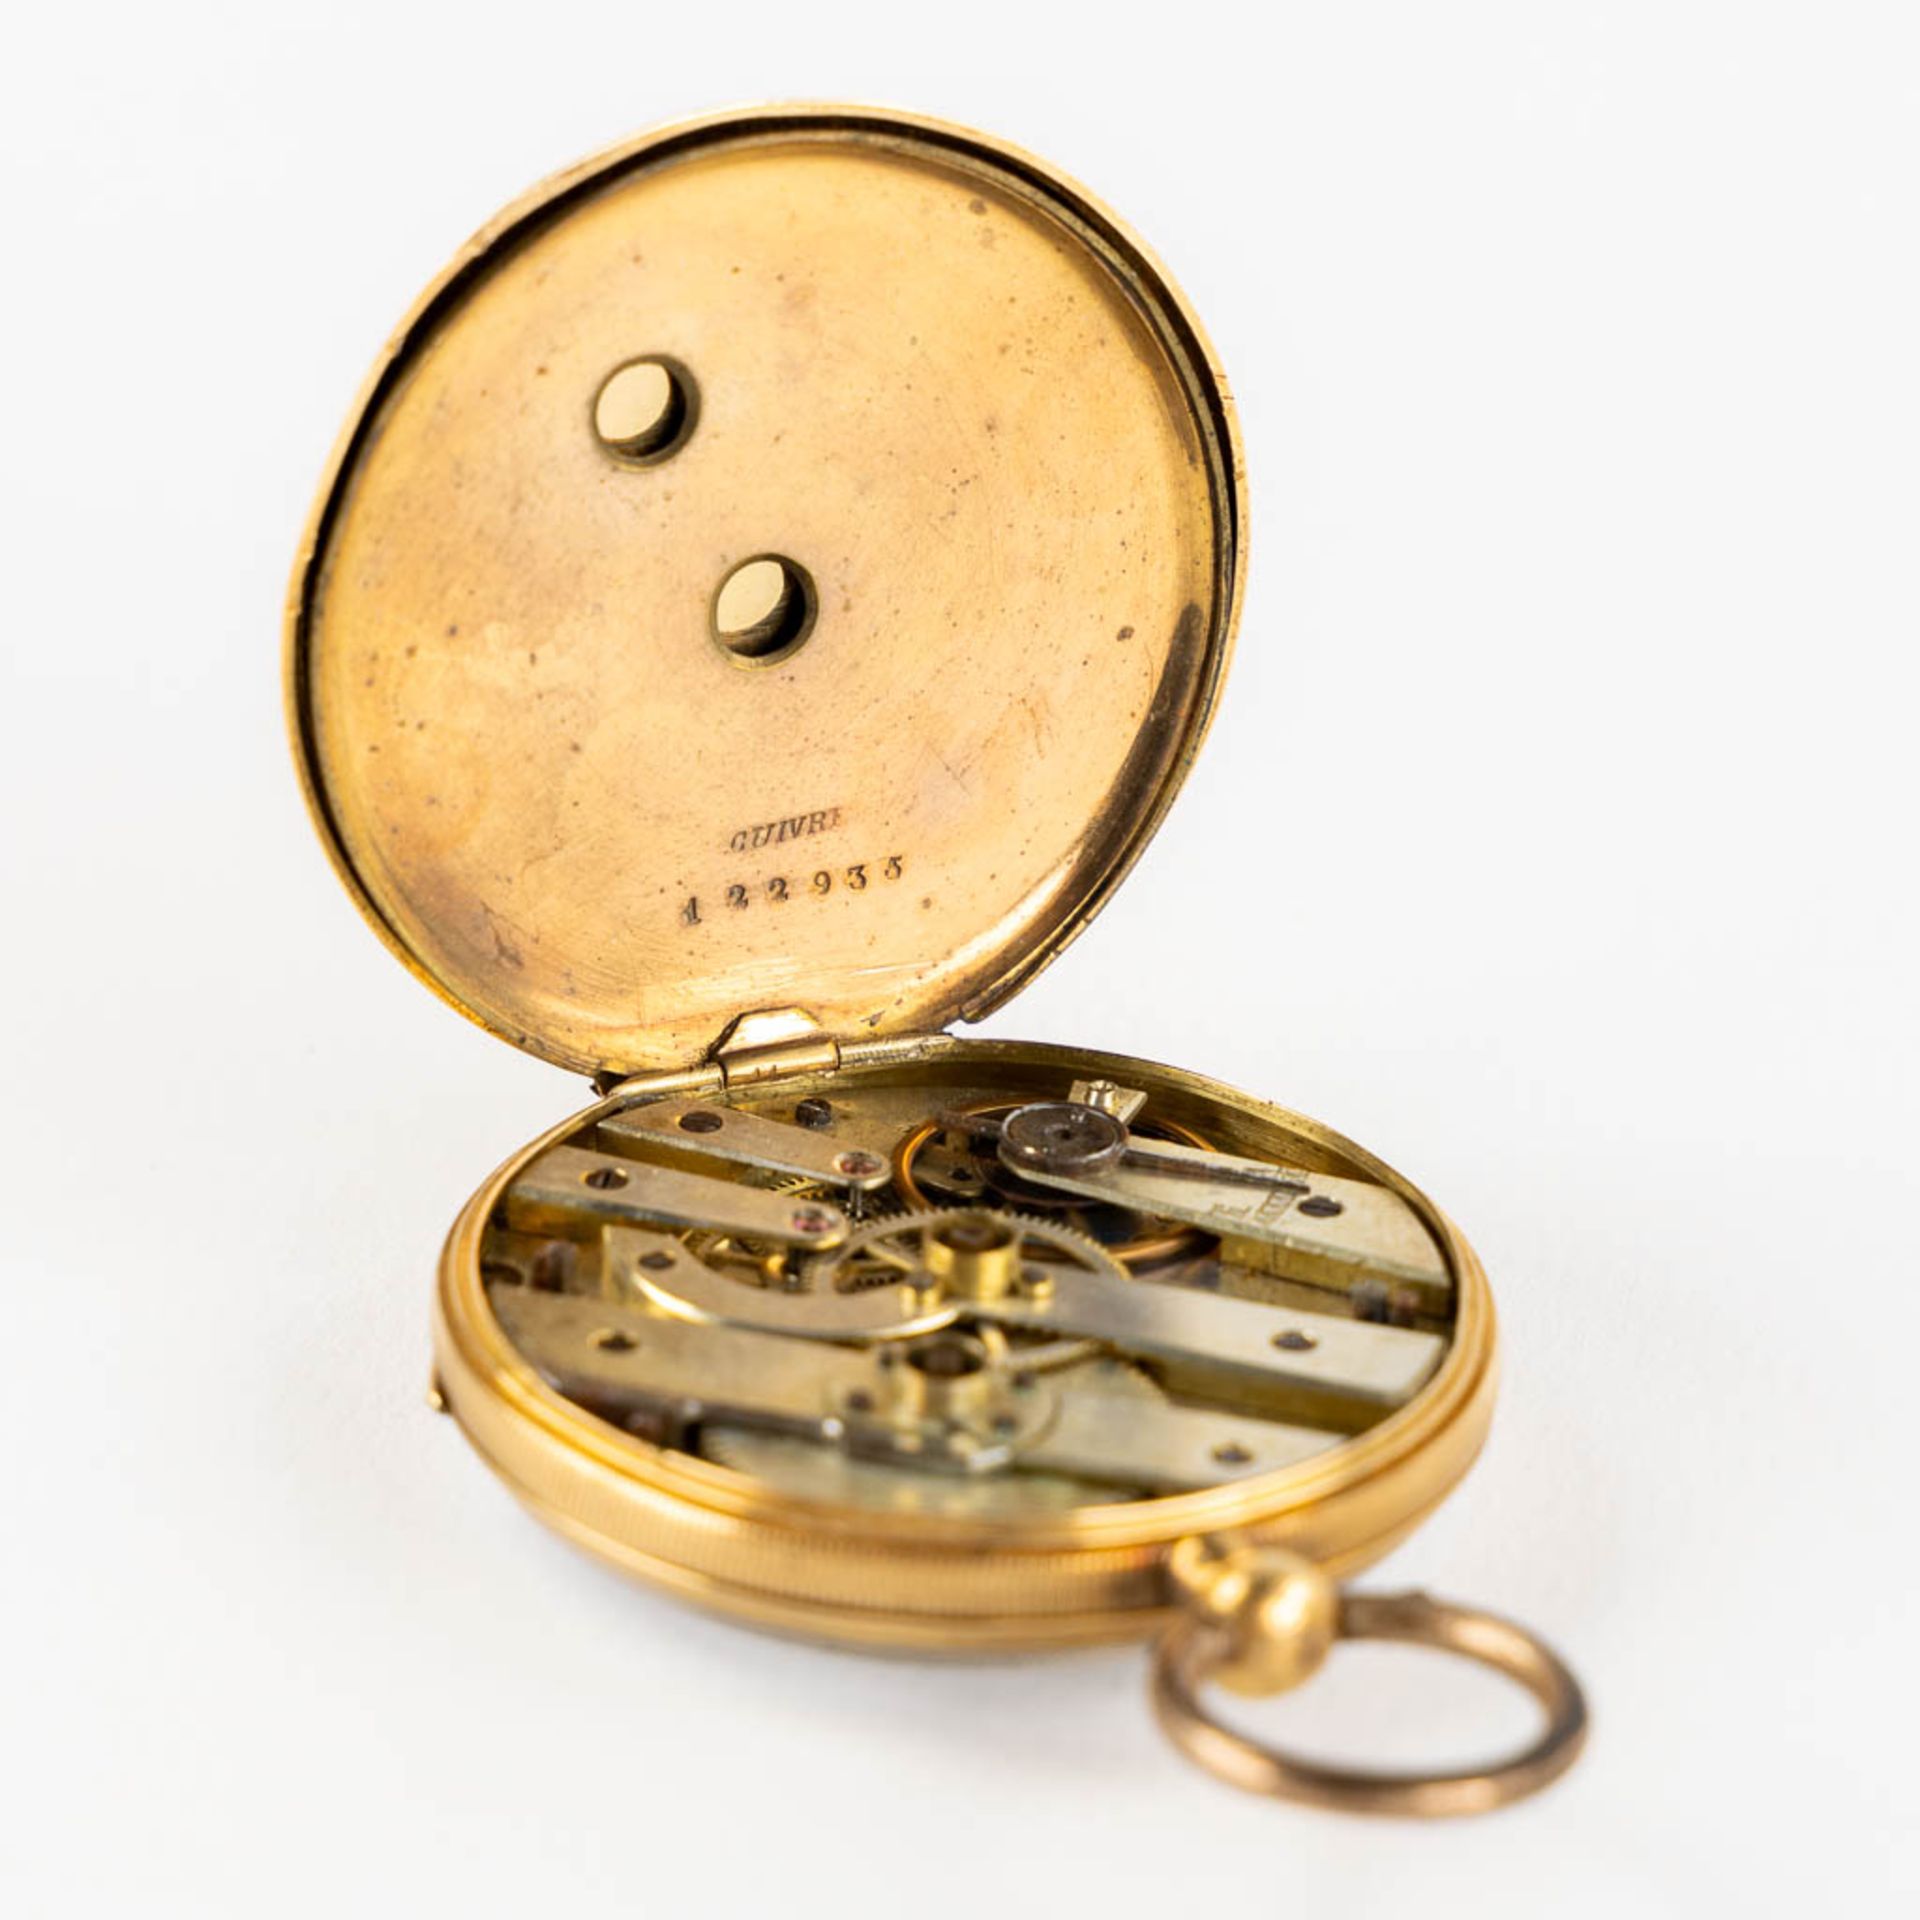 An antique pocket watch, 18kt yellow gold. Guioche image of a running horse. (W:4,3 x H:6,3 cm) - Bild 14 aus 15